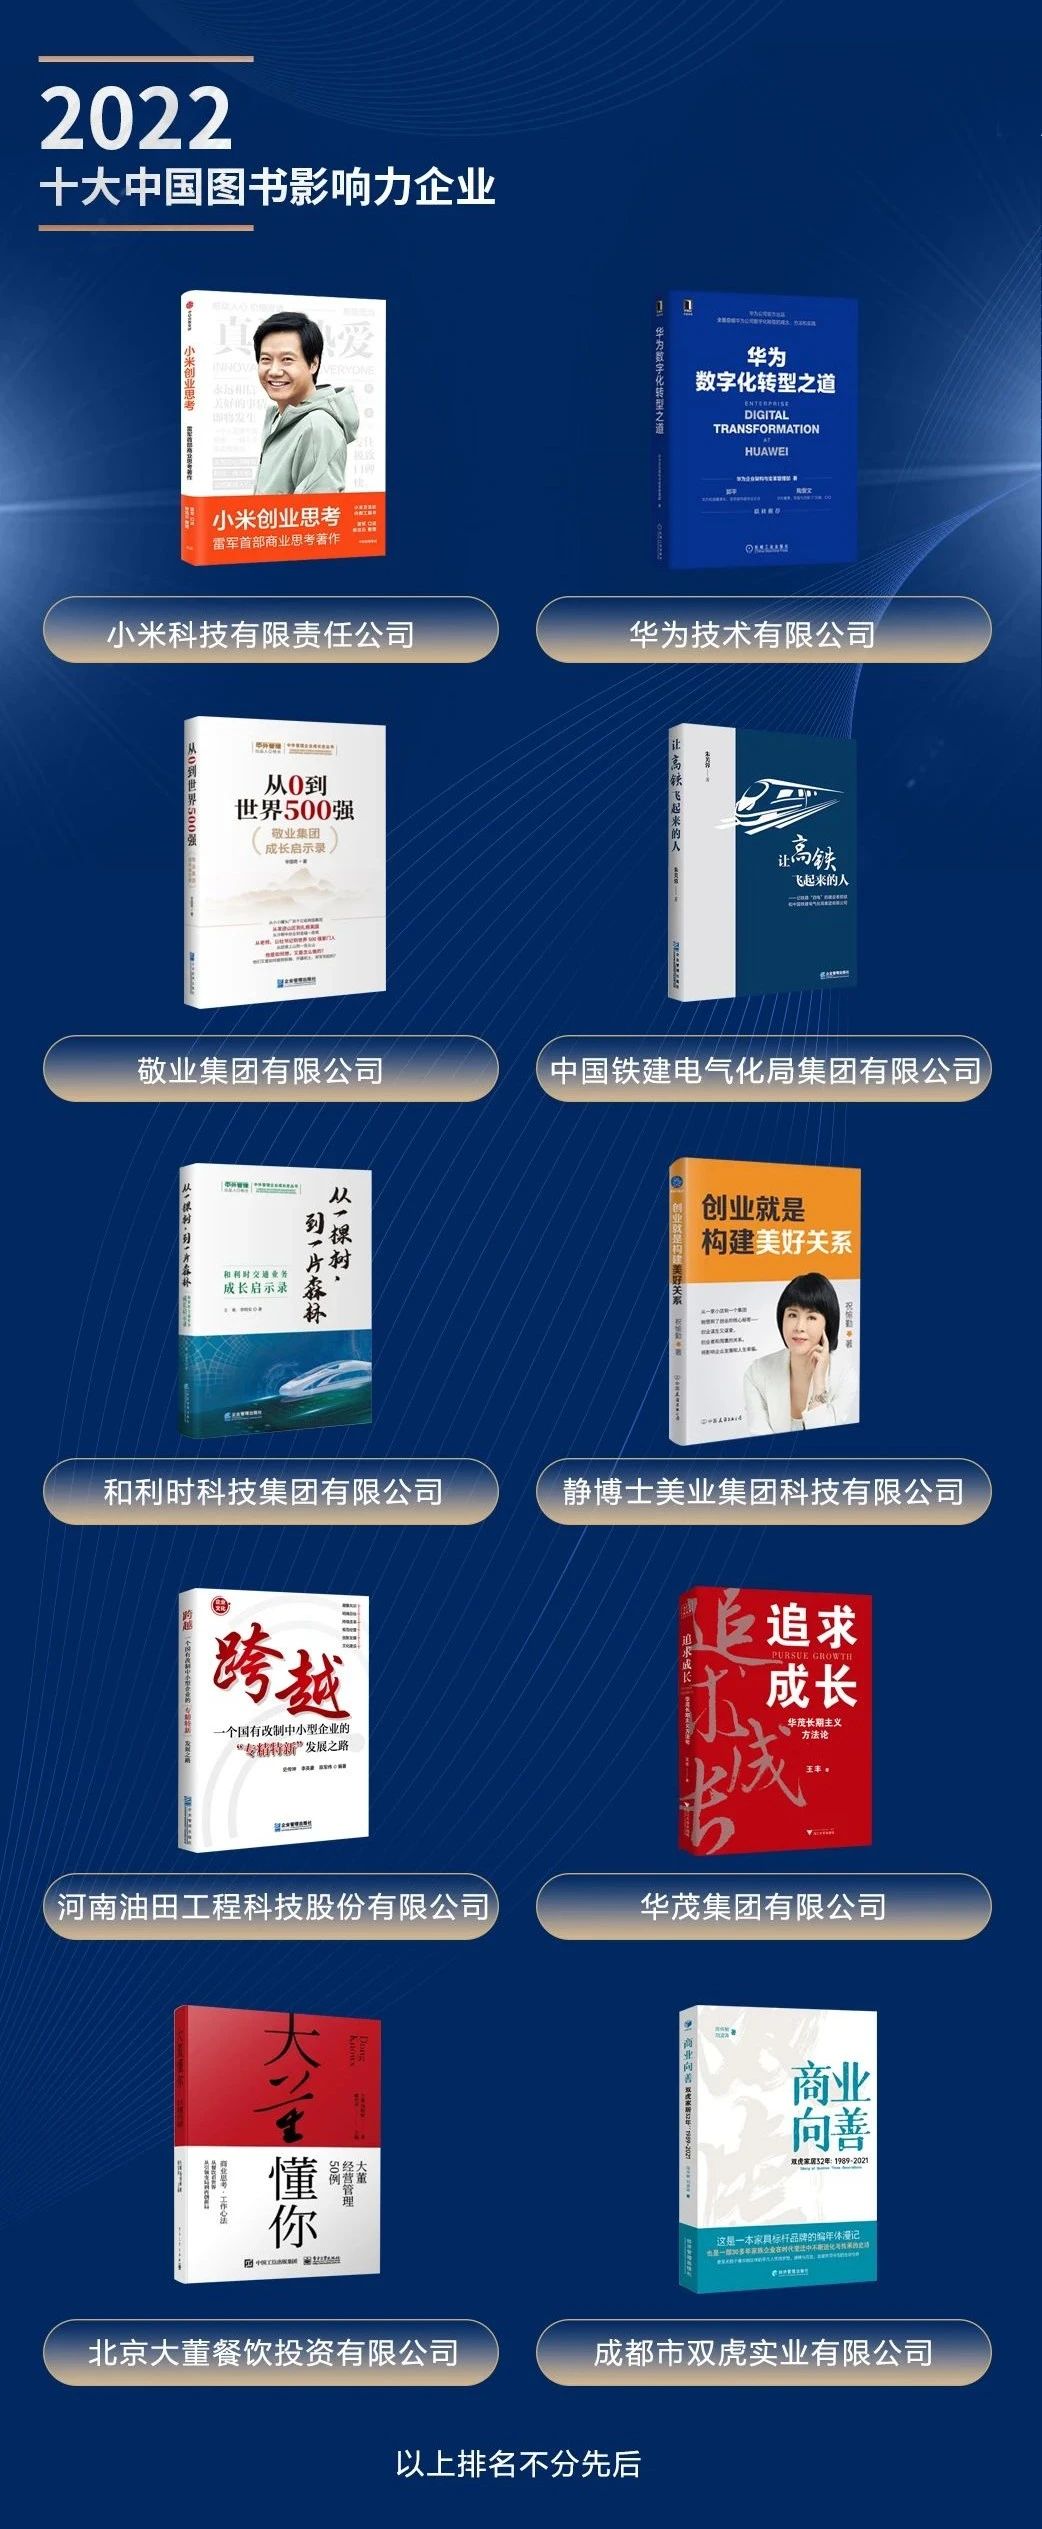 2022十大中国图书影响力企业